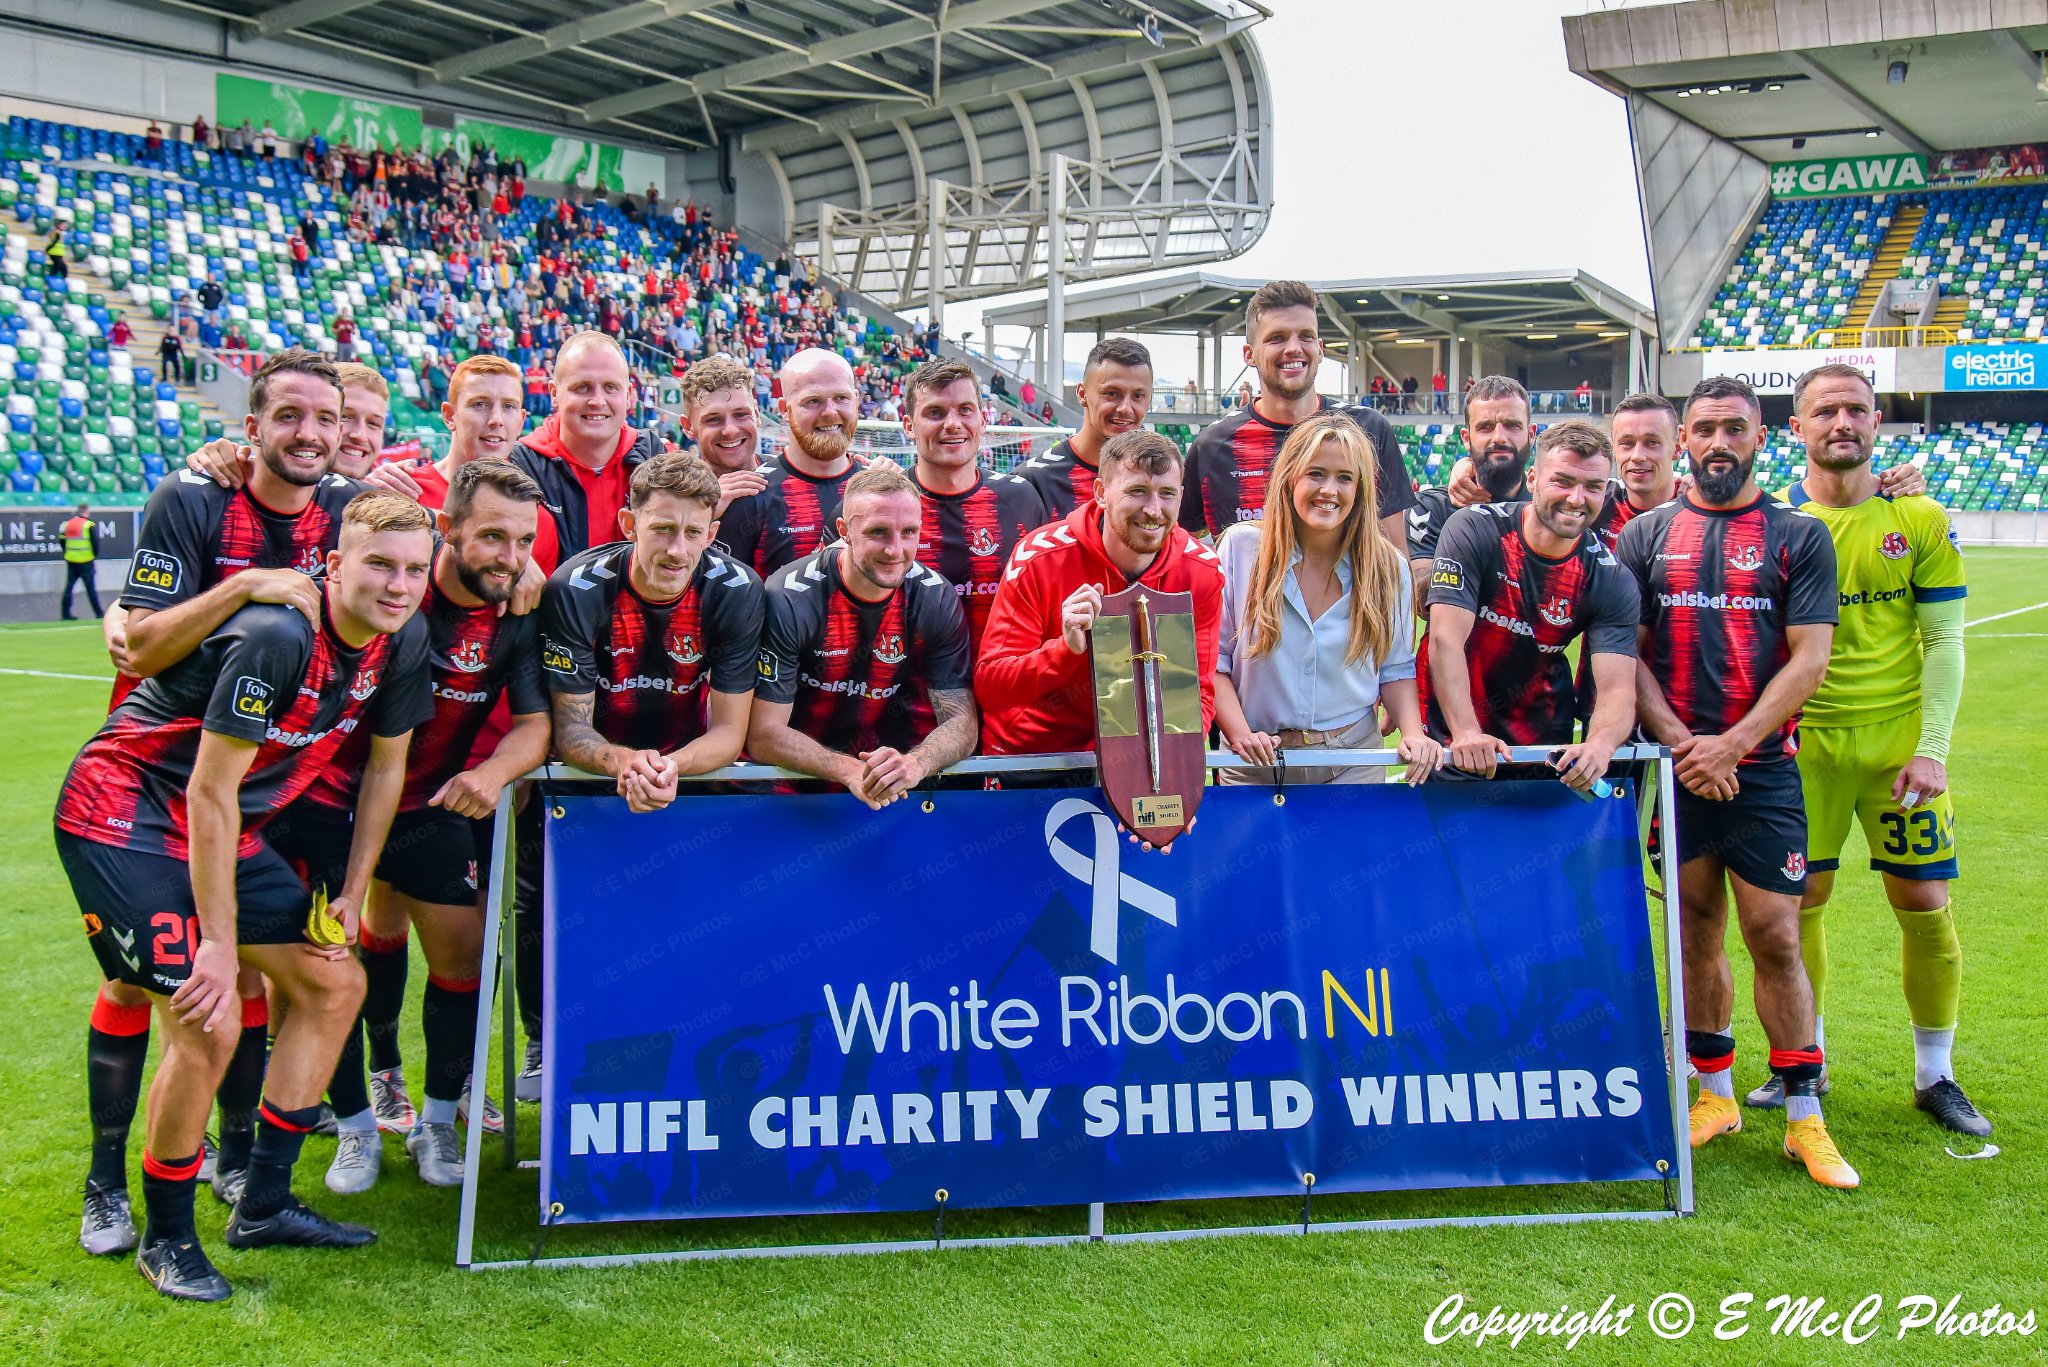 Crusaders Win WhiTe Ribbon NI Charity Shield